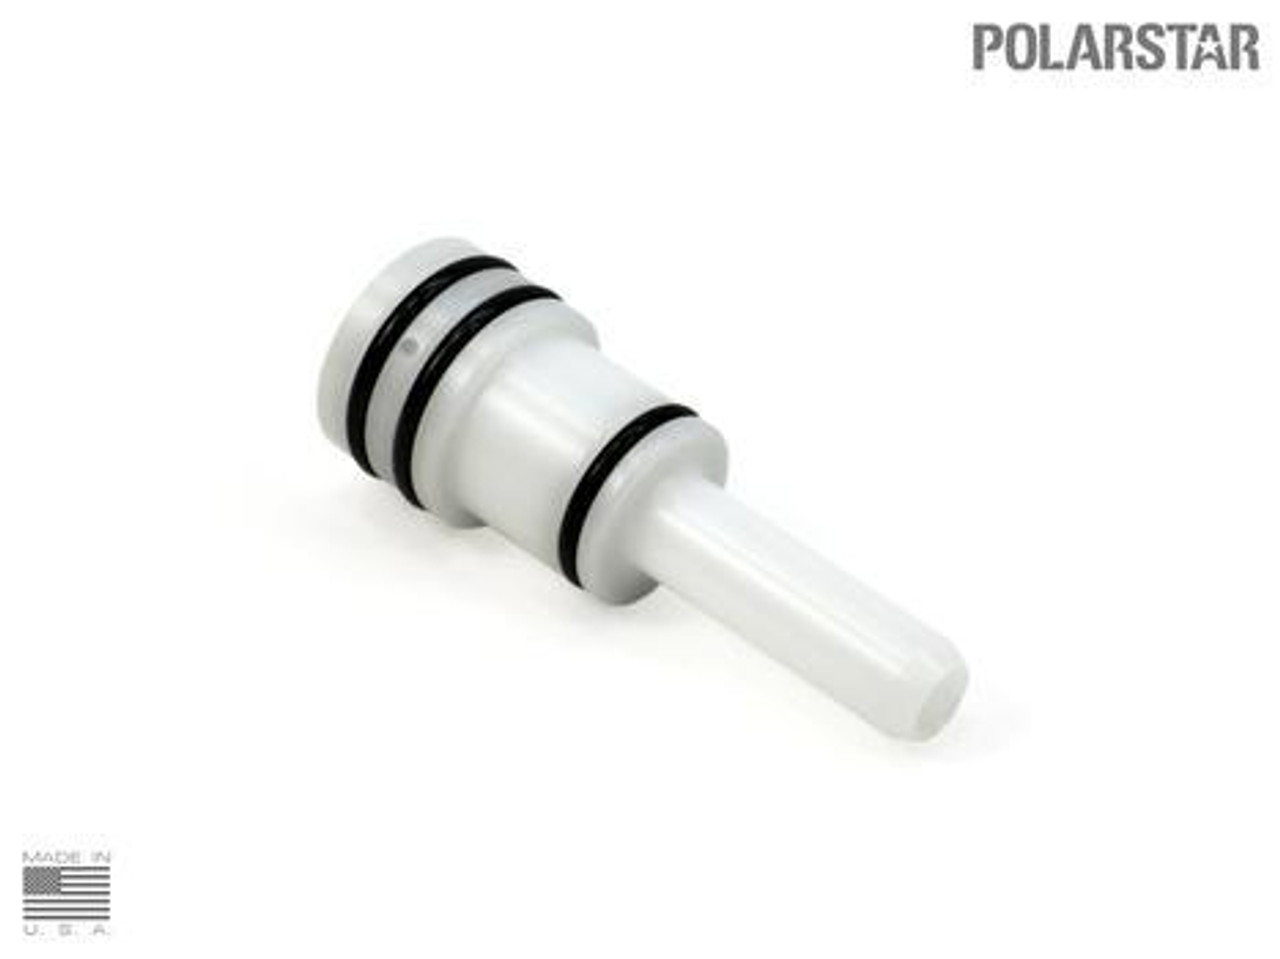 Polarstar F1 Nozzle #16 (EF/S&T G36C)